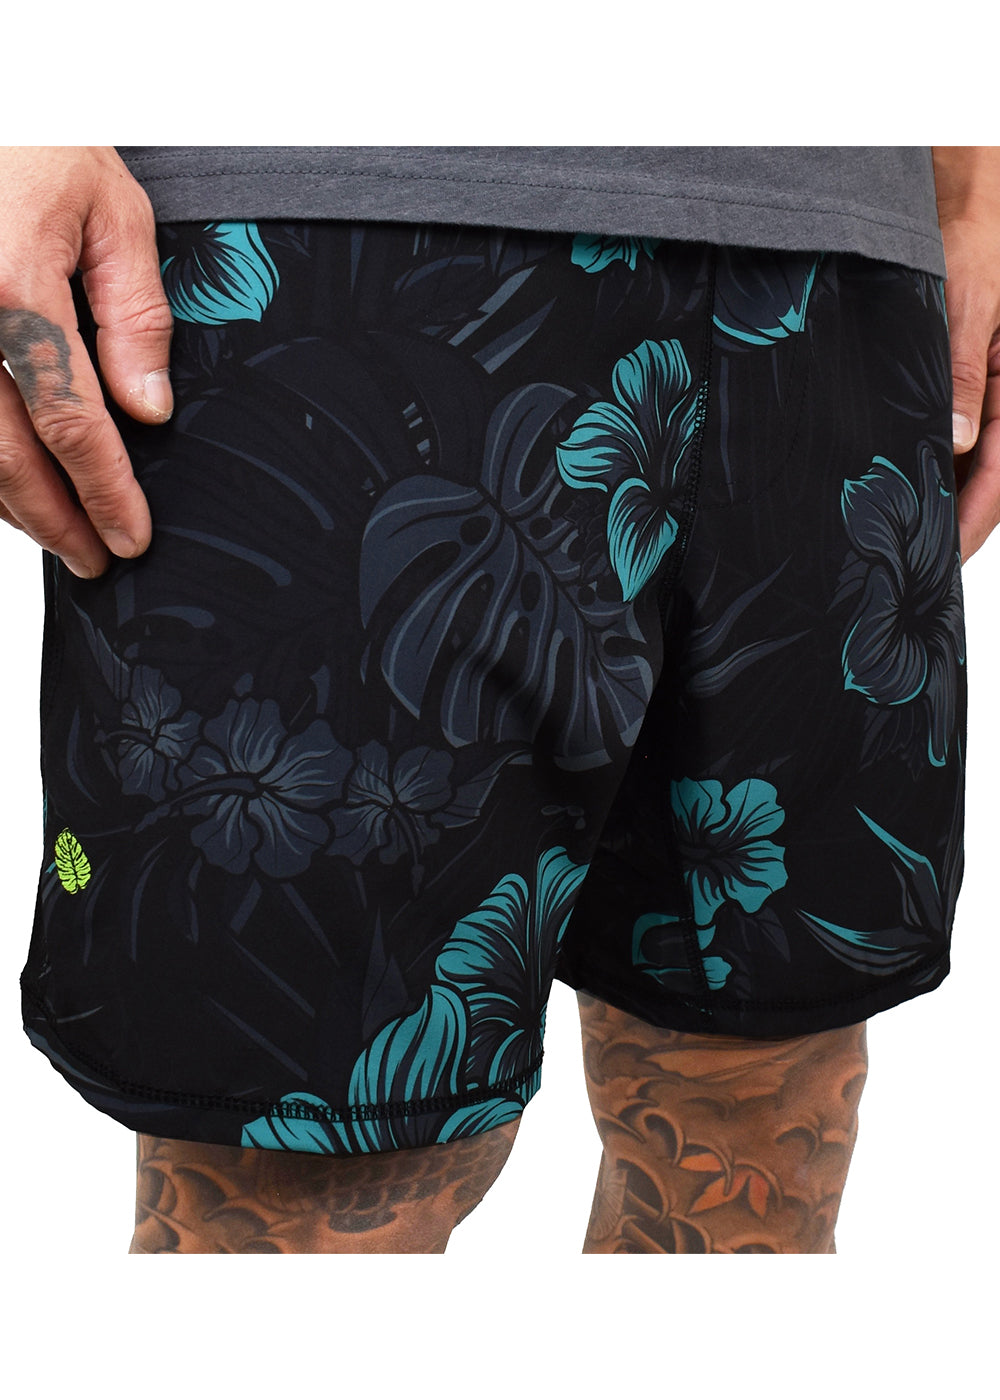 Men's 'Teal-biscus' Blended Hybrid Shorts